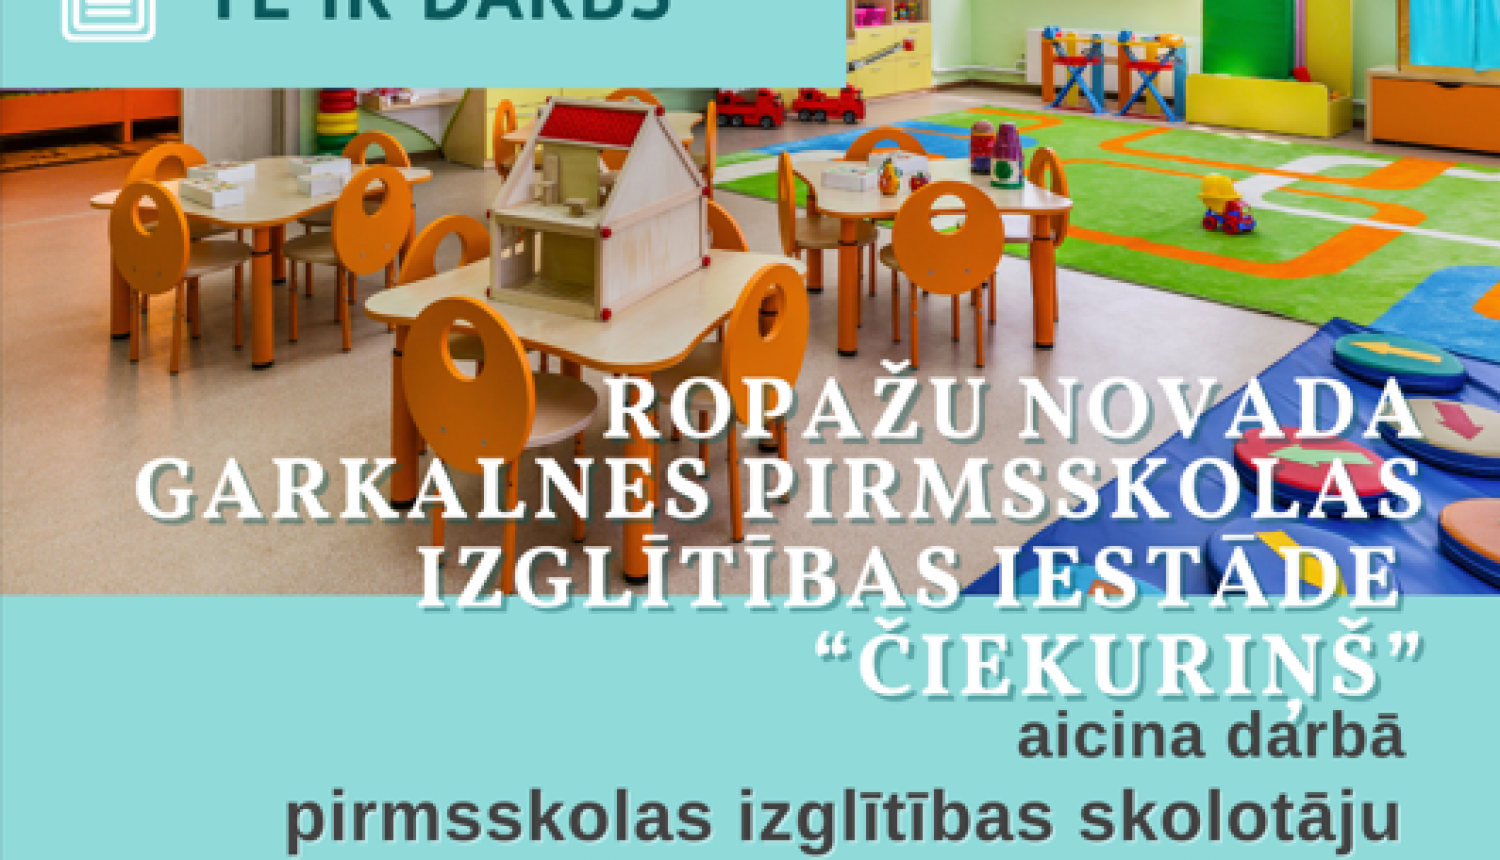 Ropažu novada pašvaldības Garkalnes pirmsskolas izglītības iestāde “Čiekuriņš” aicina pirmsskolas izglītības skolotāju darbā 